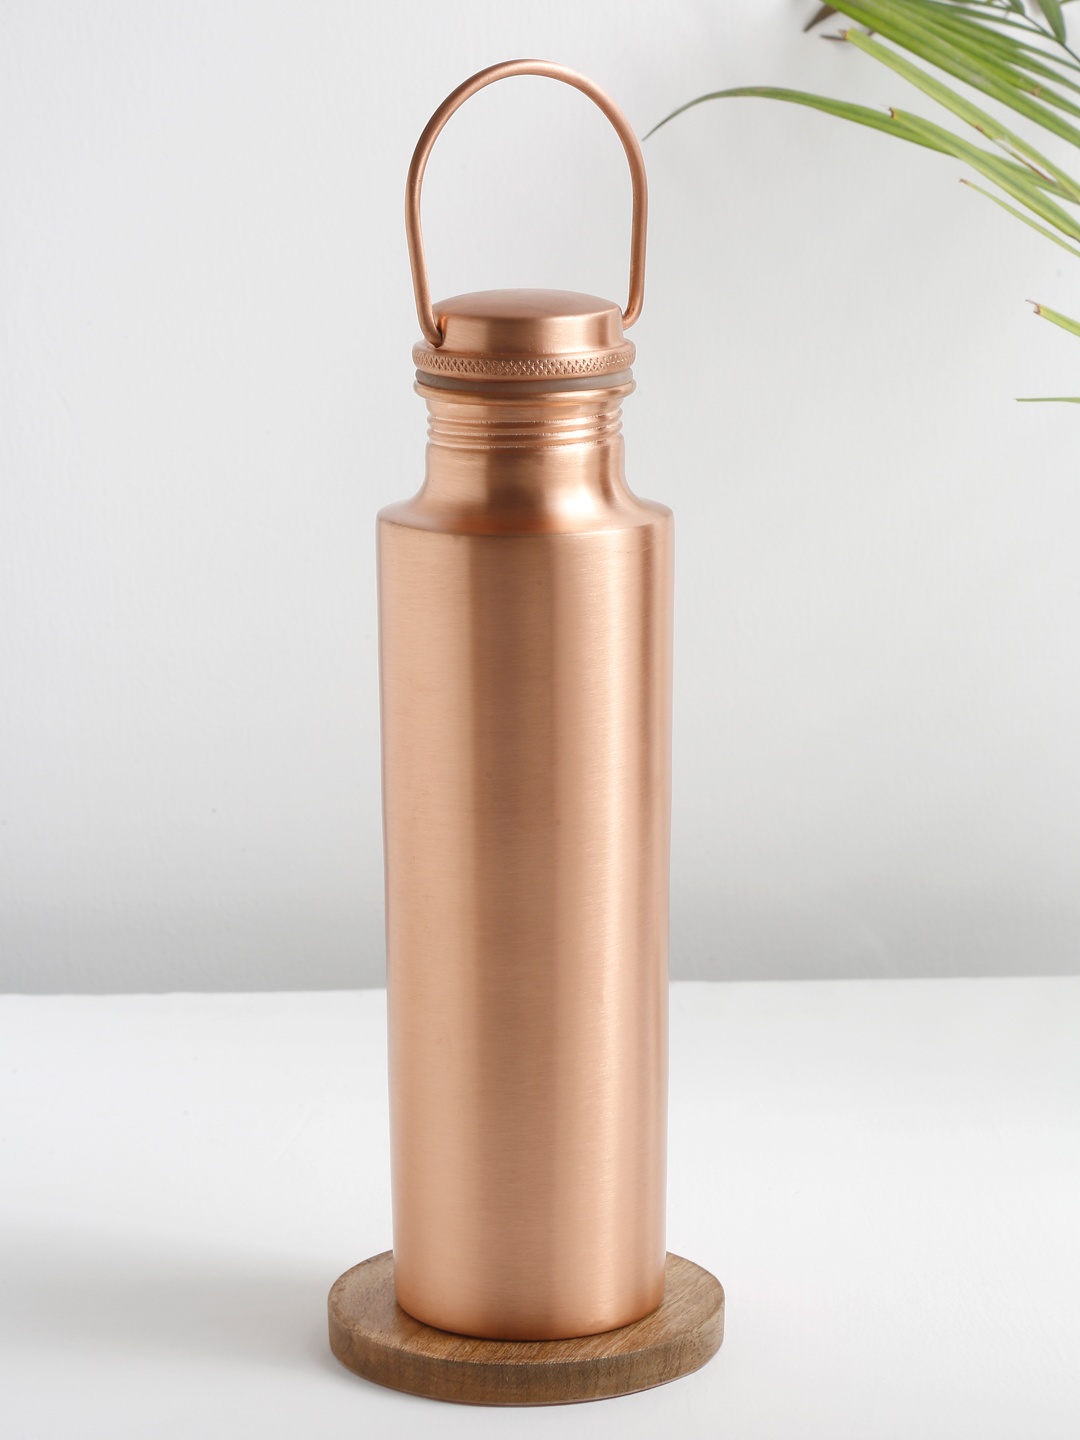 

EK BY EKTA KAPOOR Copper-Toned Matte Finish Copper Water Bottle 950 ml